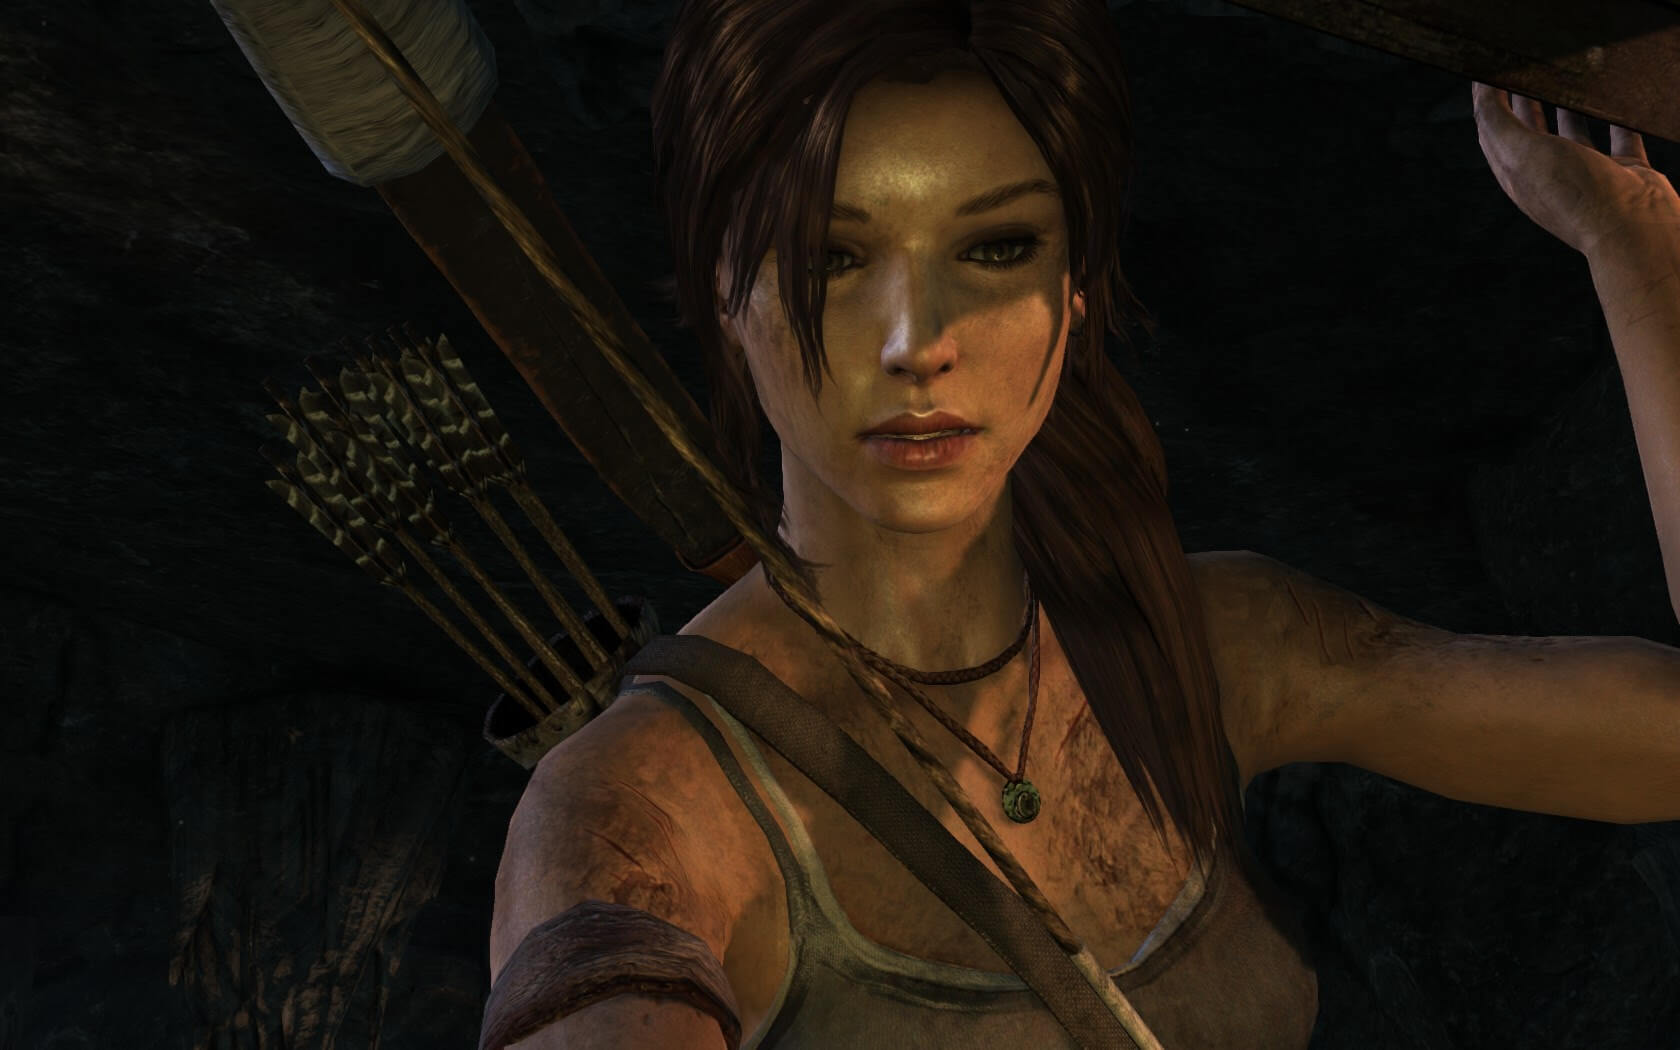 【トゥームレイダー】美女・美人な登場人物・キャラクター ララ・クロフトの画像まとめ【Tomb Raider】